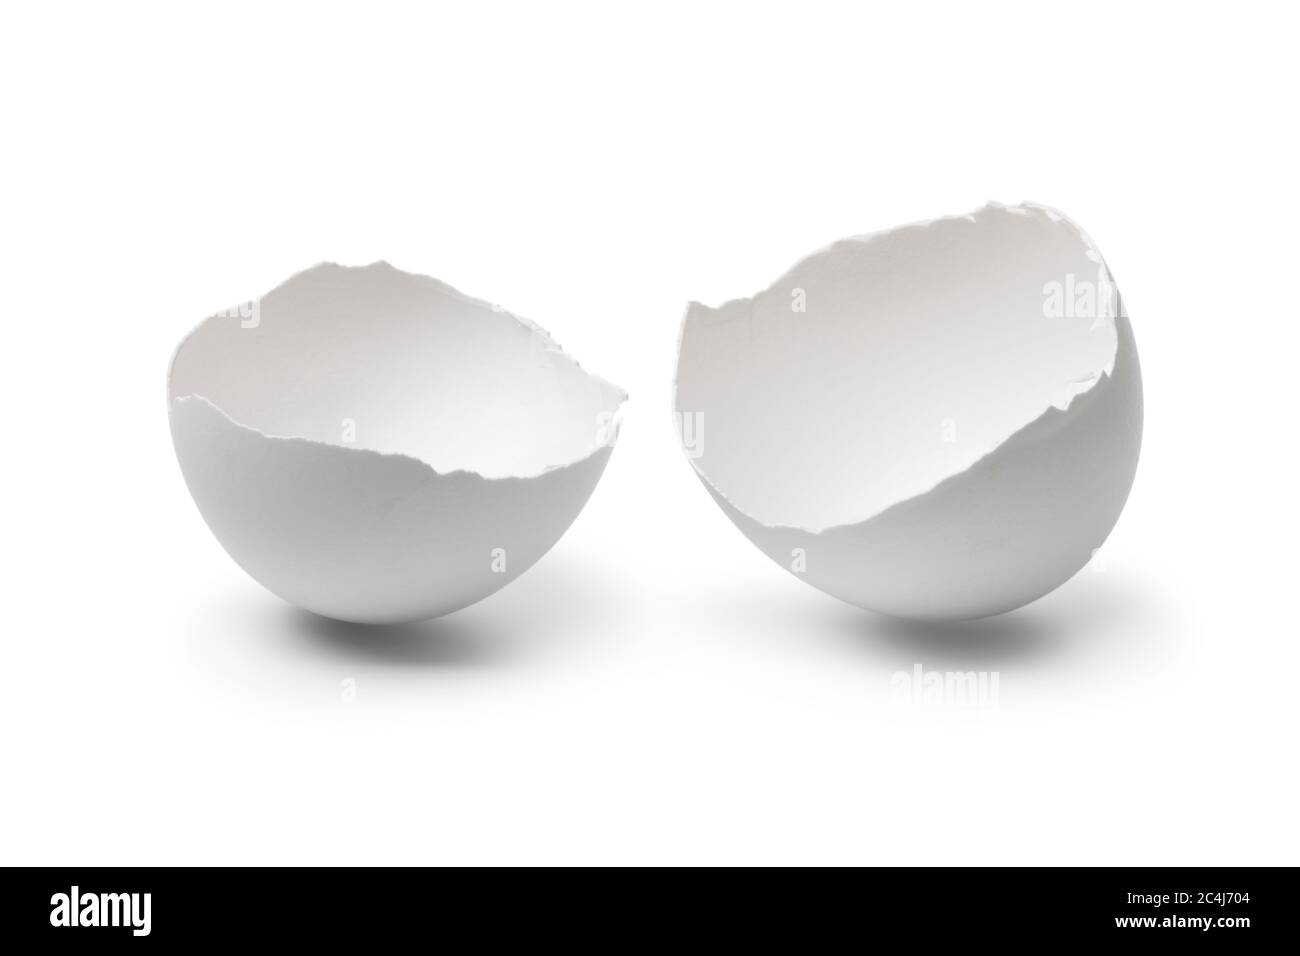 Les coquilles d'œufs blanches brisées sont isolées sur fond blanc Banque D'Images